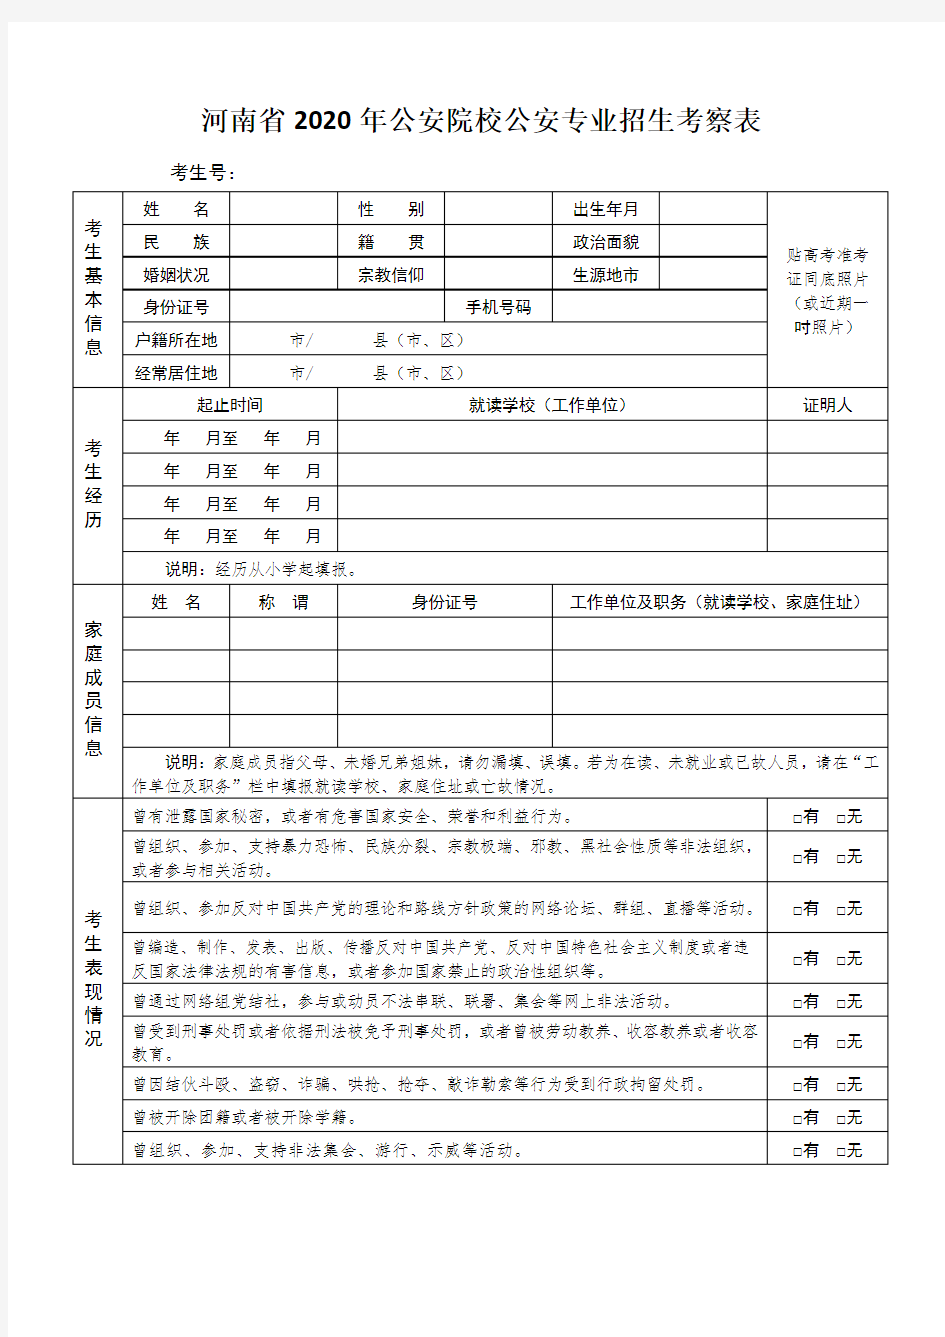 河南省2020年公安院校公安专业招生考察表